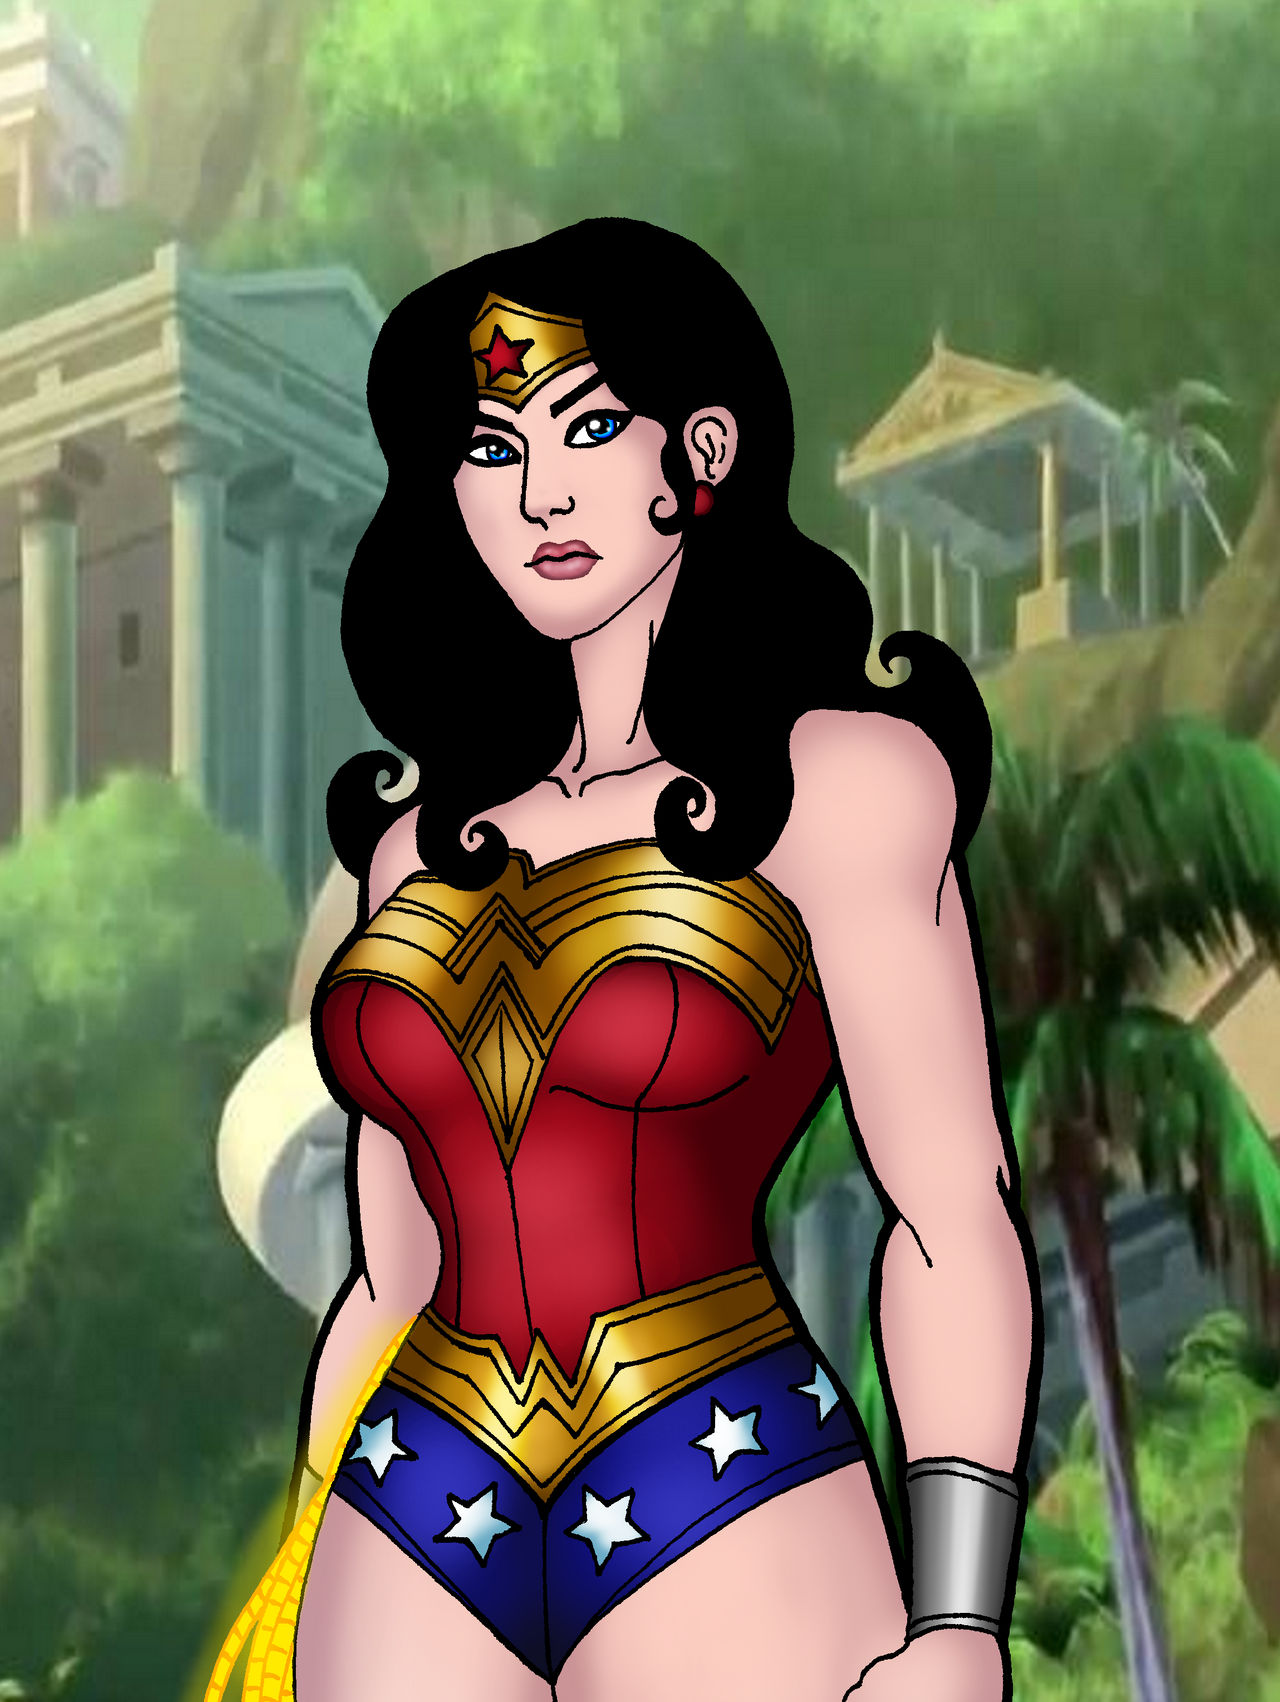 Wonder Woman Bloodlines by hananovie on DeviantArt